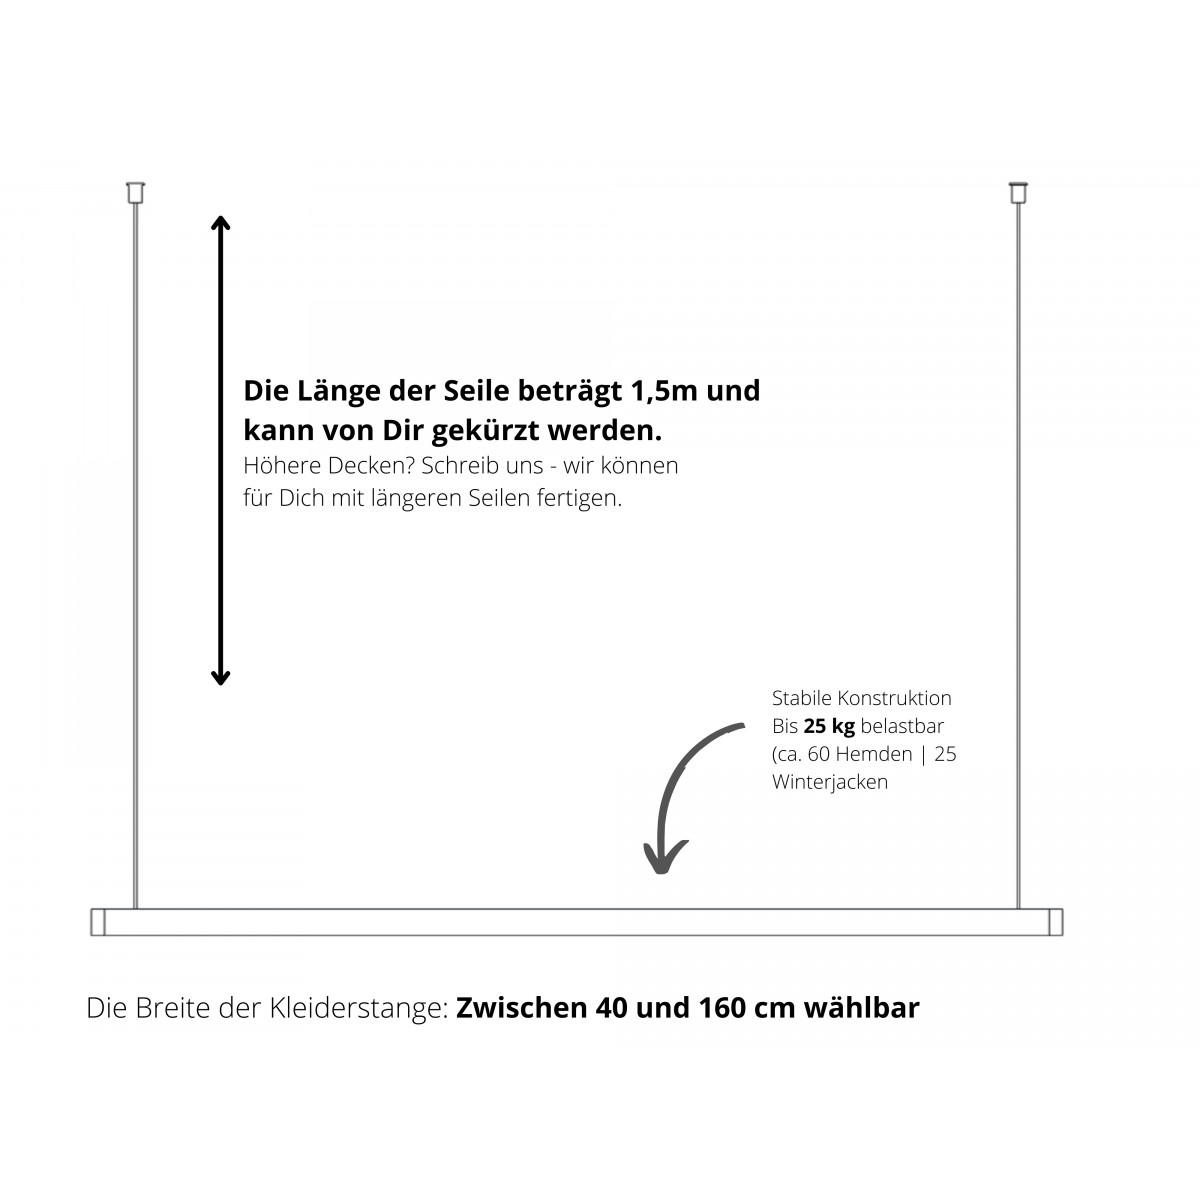 STEEL OAK Hängegarderobe Eiche & Edelstahl | schwebende Kleiderstange [40 - 160 cm] Deckenmontage | Kellermann Manufakturen